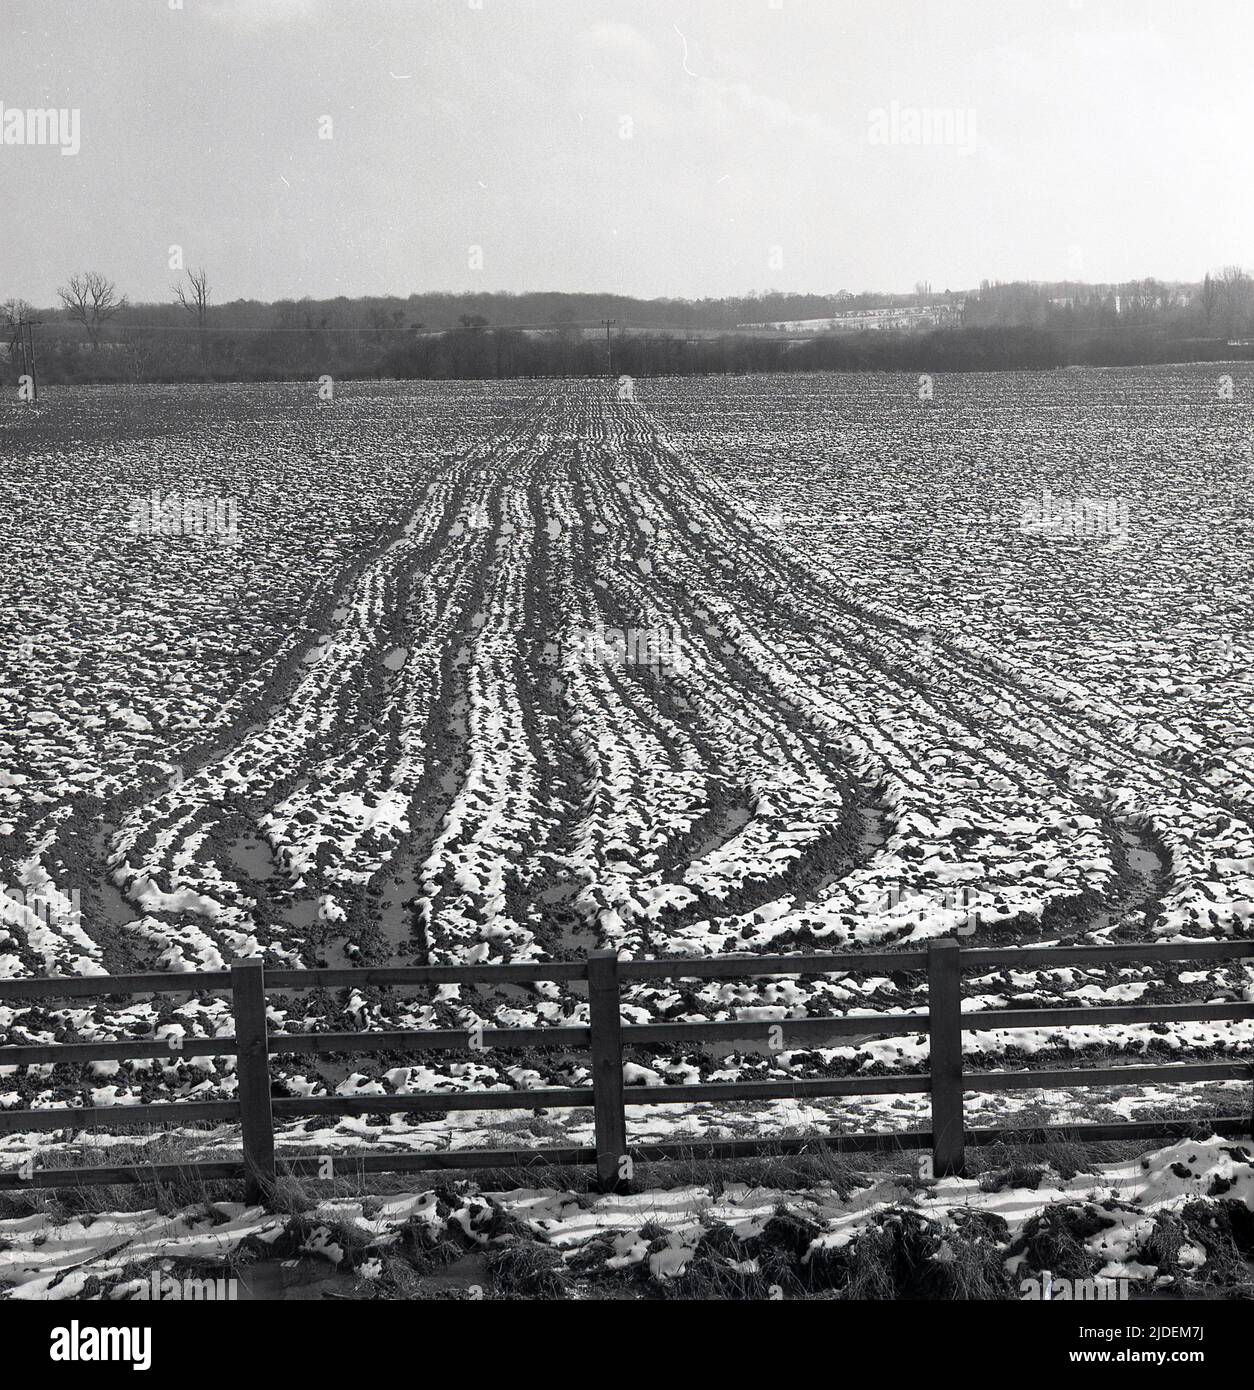 1960s, tiempo histórico, de invierno y en una granja una vista a través de un campo cubierto de nieve, con la sección media arada del suelo haciendo un patrón distintivo, Inglaterra, Reino Unido. Foto de stock